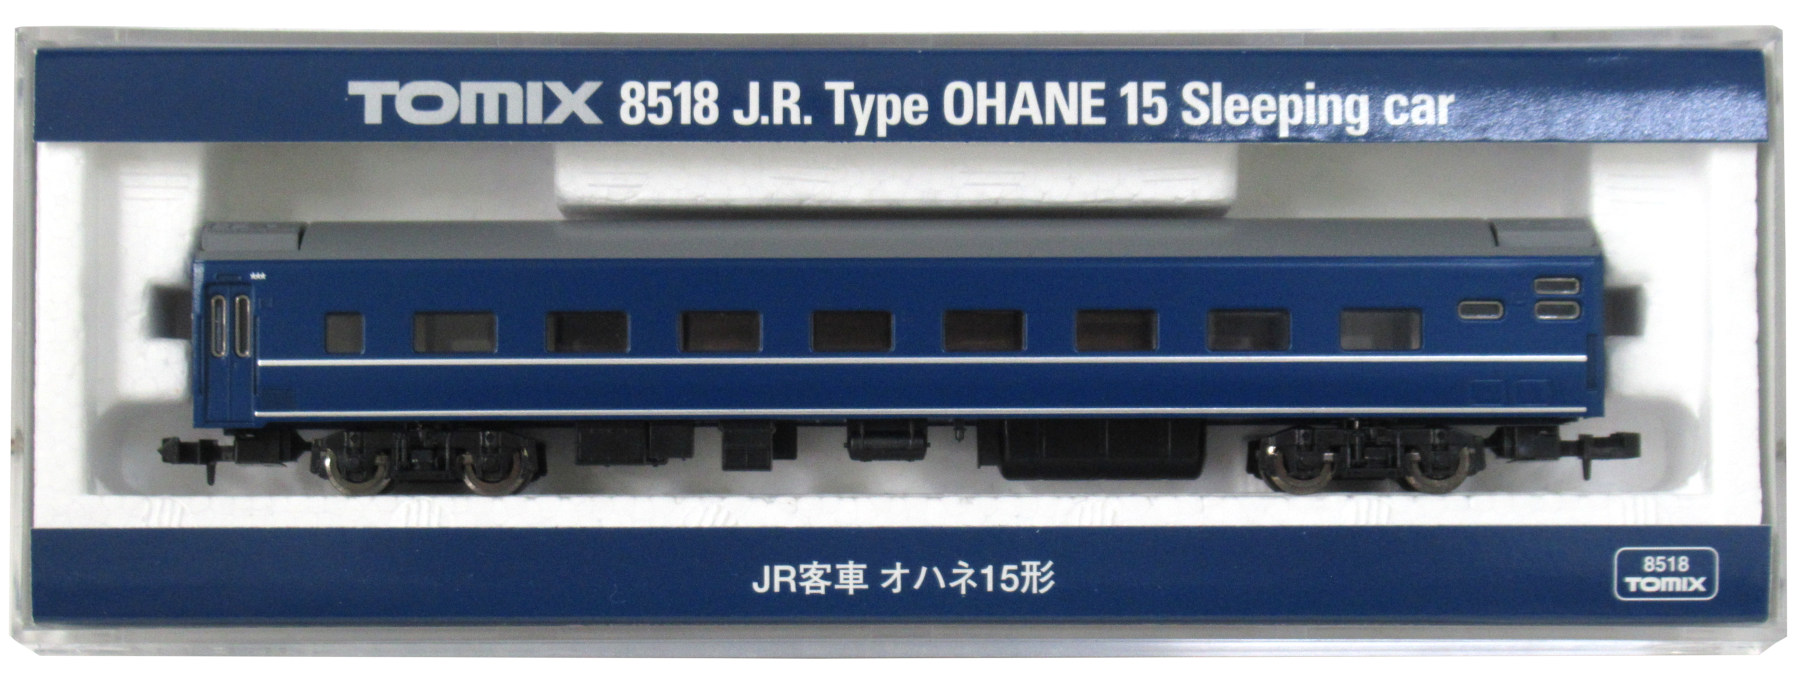 8518 JR客車 オハネ15形 2008年ロット